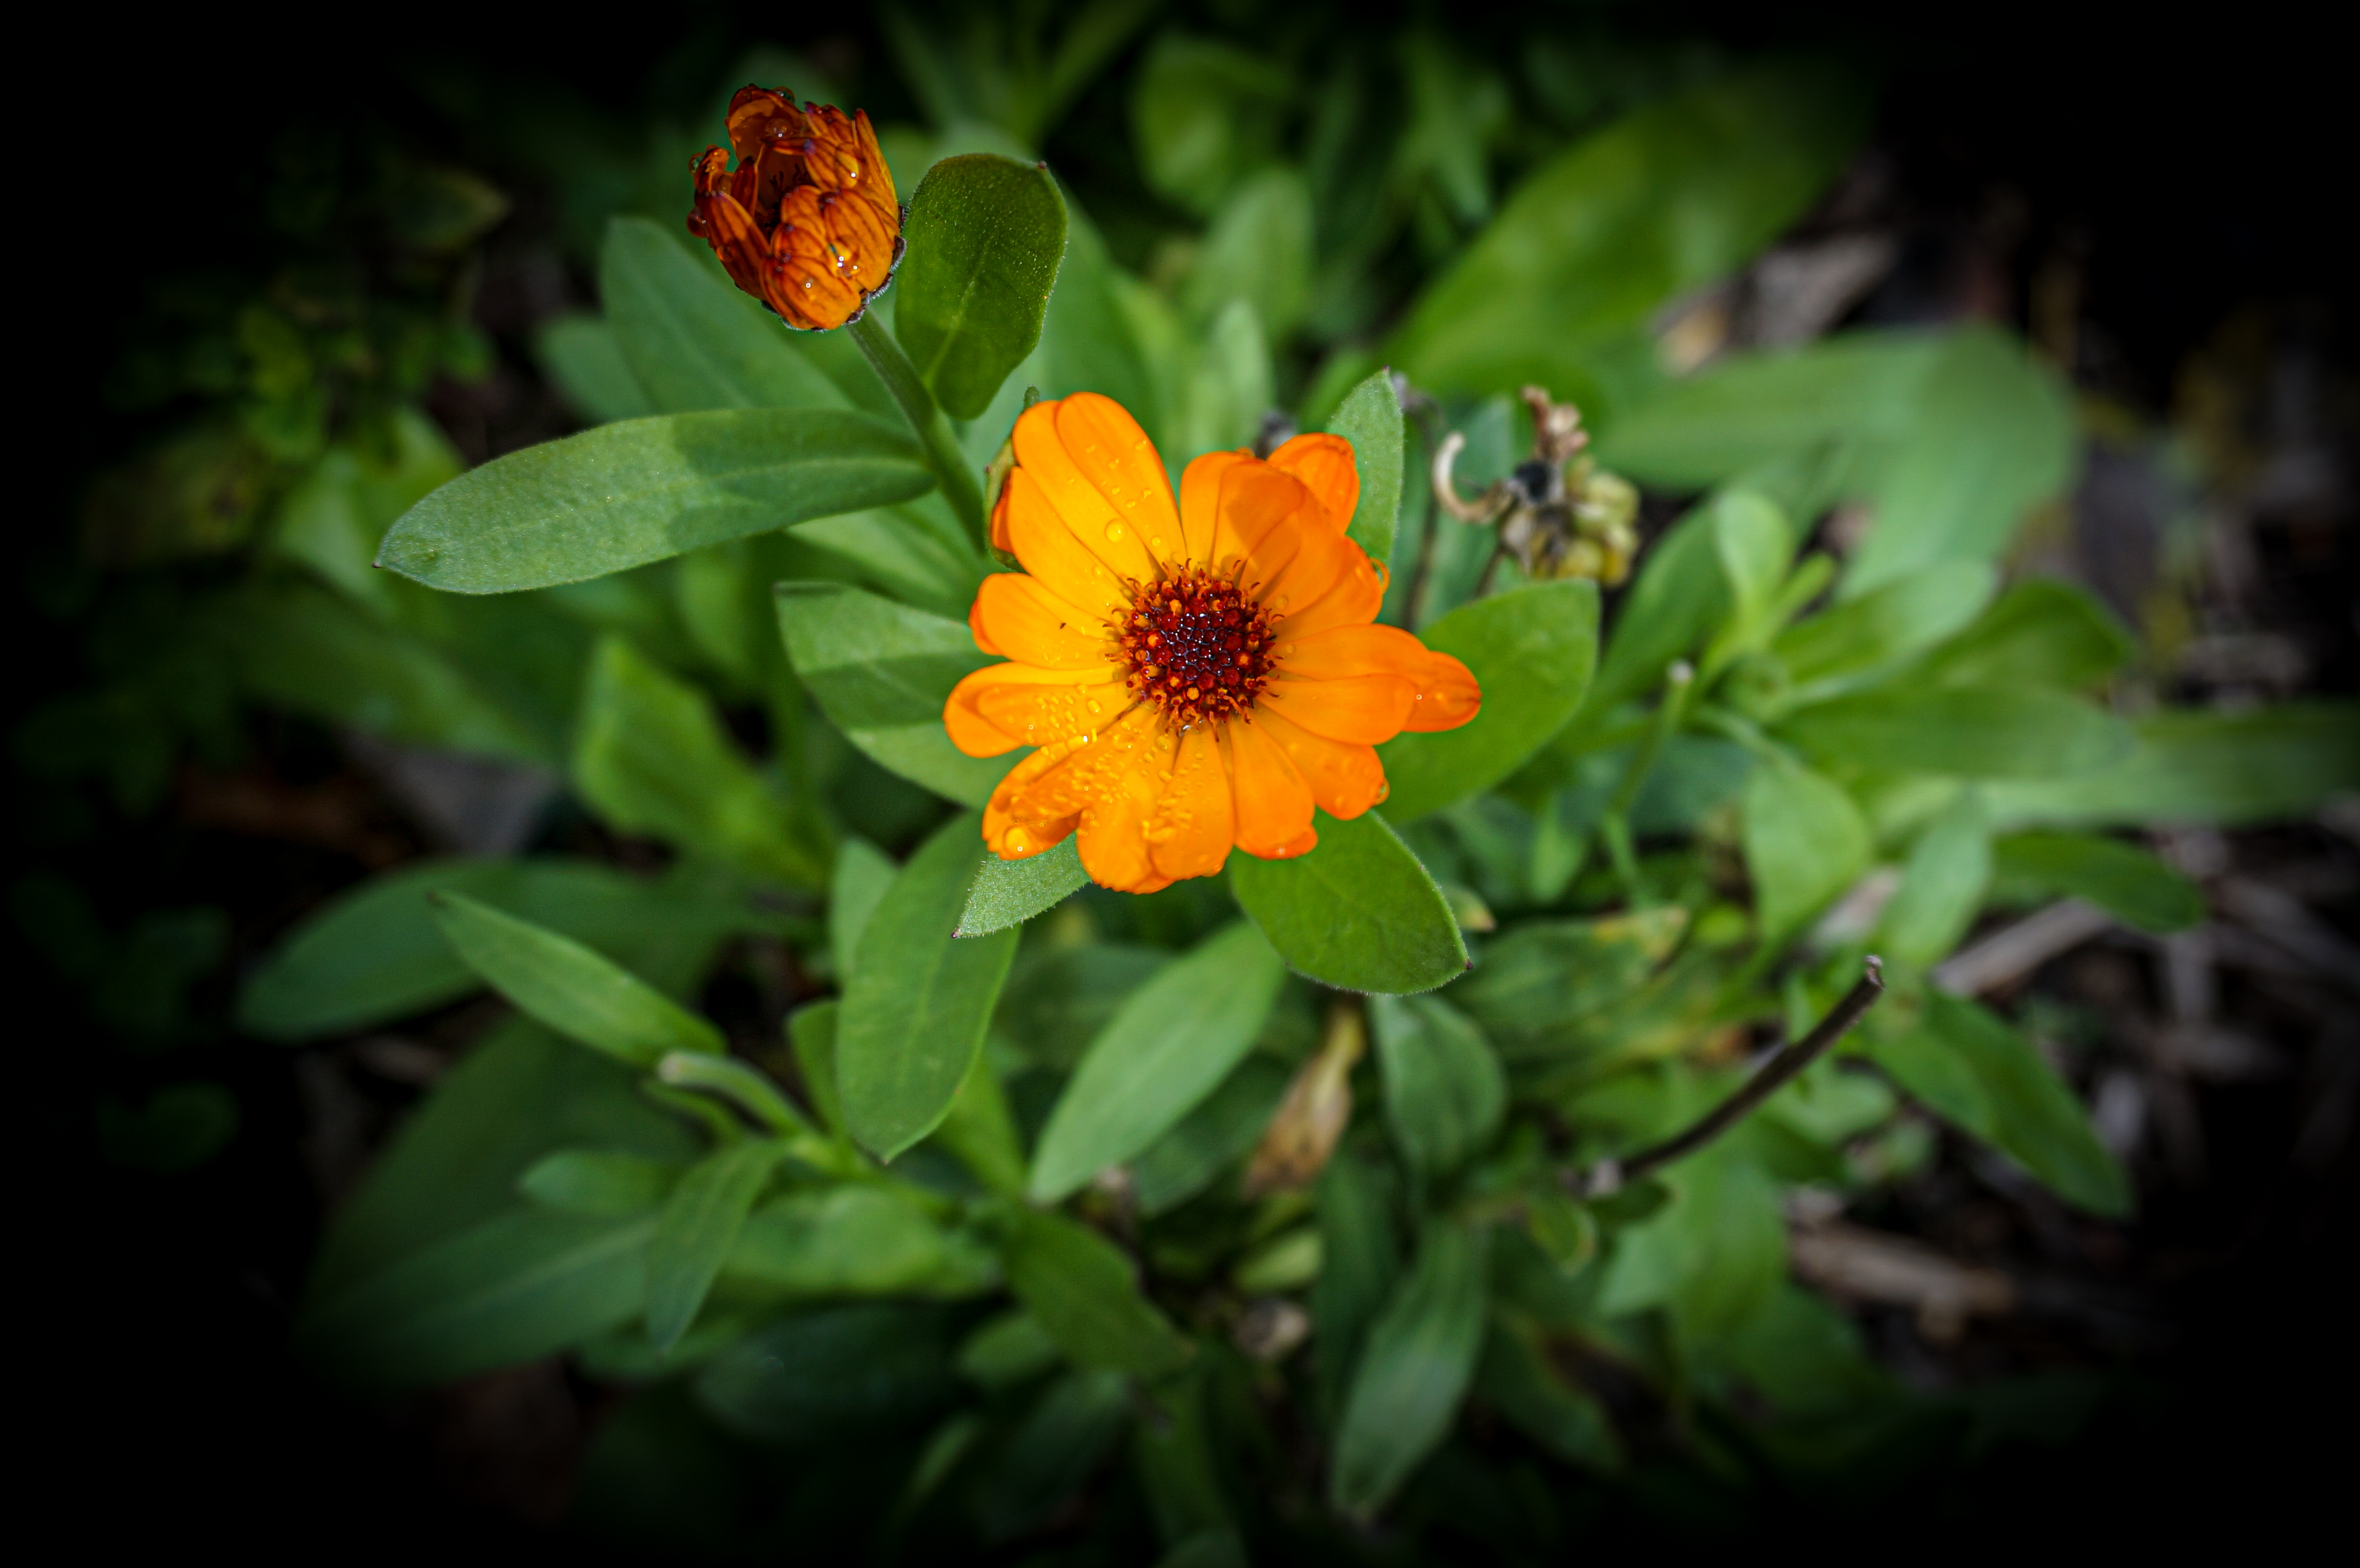 An orange calendula flower in full bloom